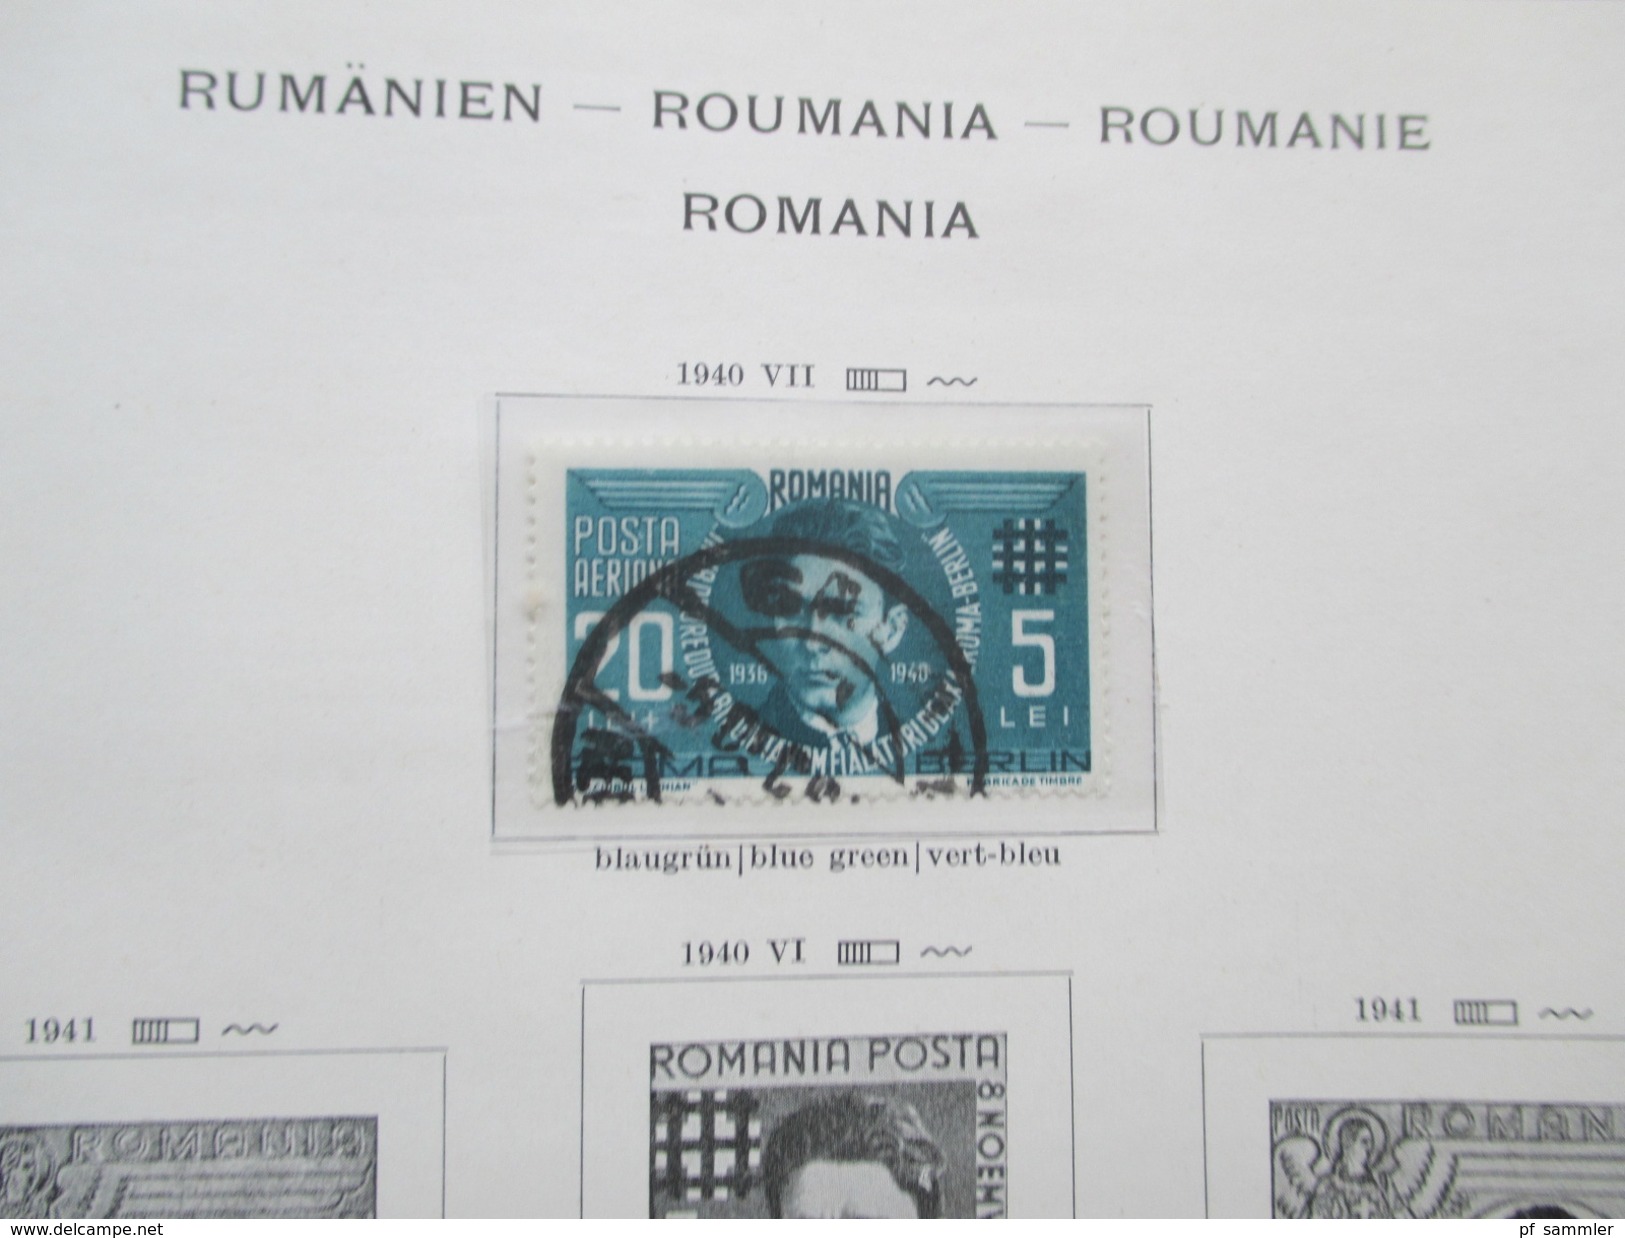 Sammlung Rumänien 1866 - 1957 * / o im Vordruckalbum mit viel Material! Fundgrube!!